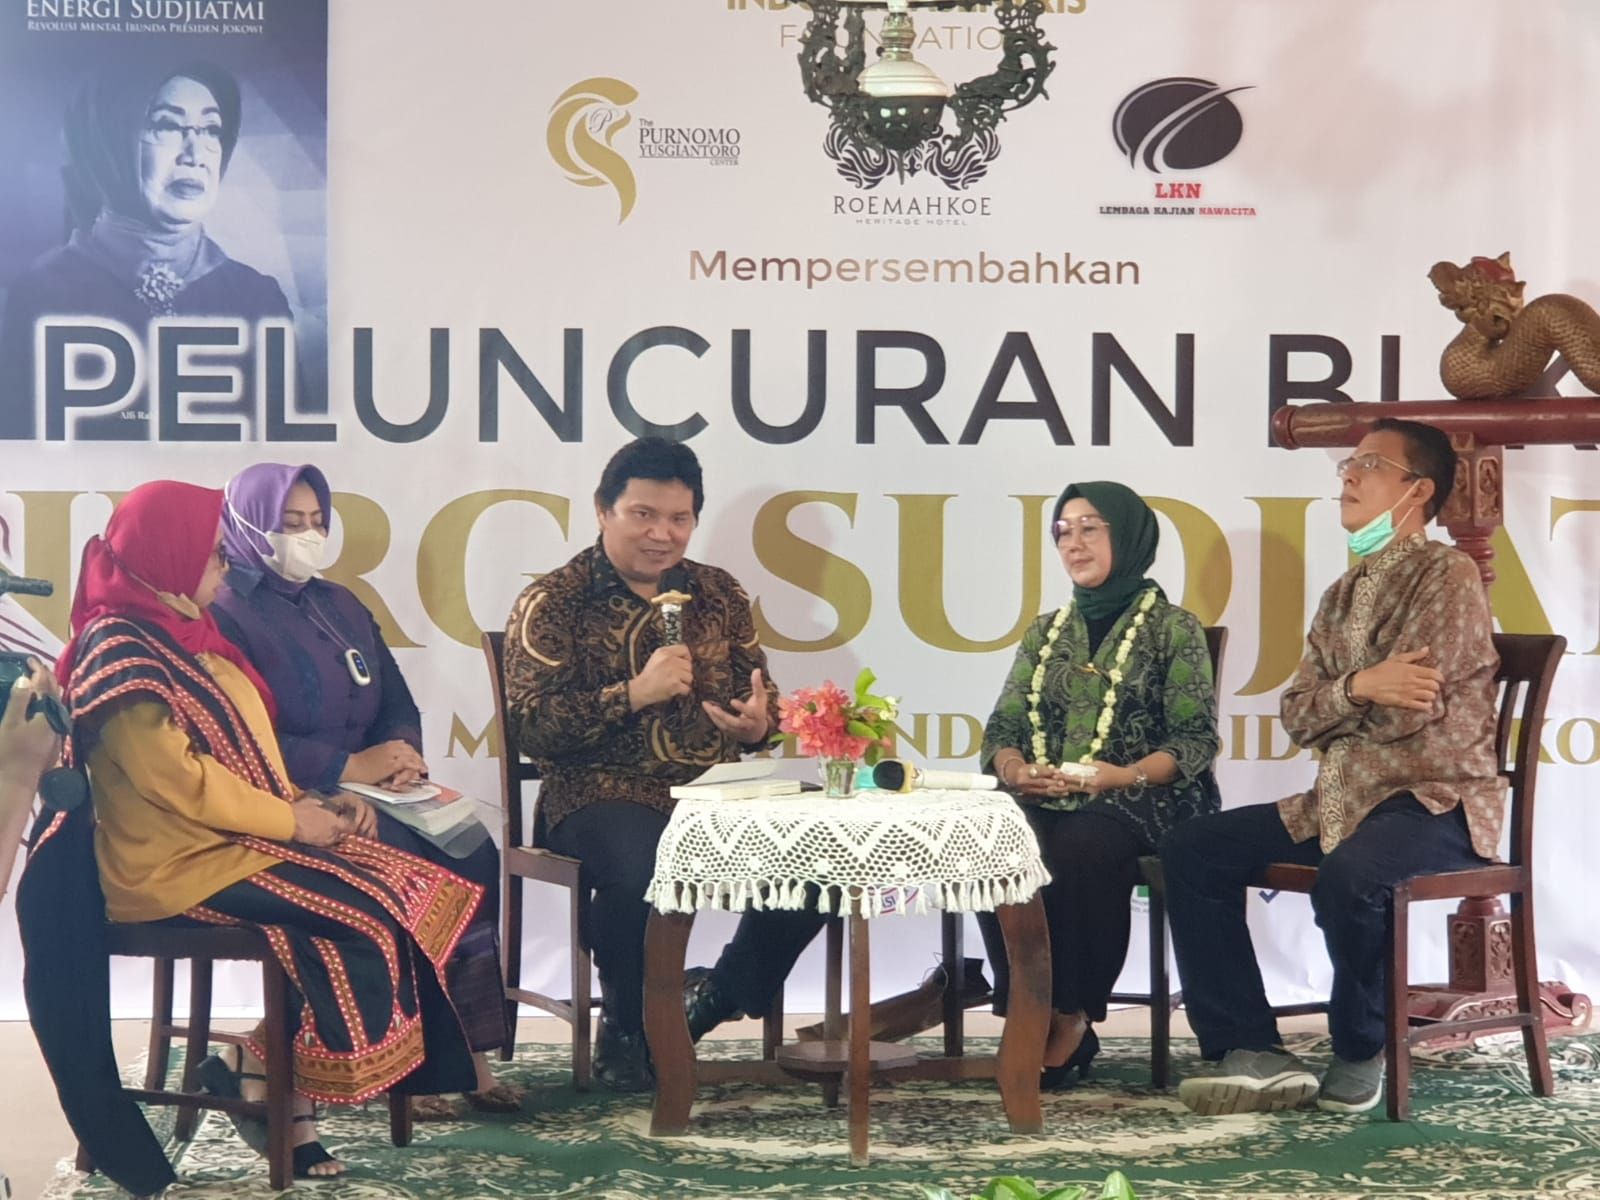 Tepat di hari Ibu, Indonesia Sentris Fondation lucurkan buku Energi Sudjiatmi